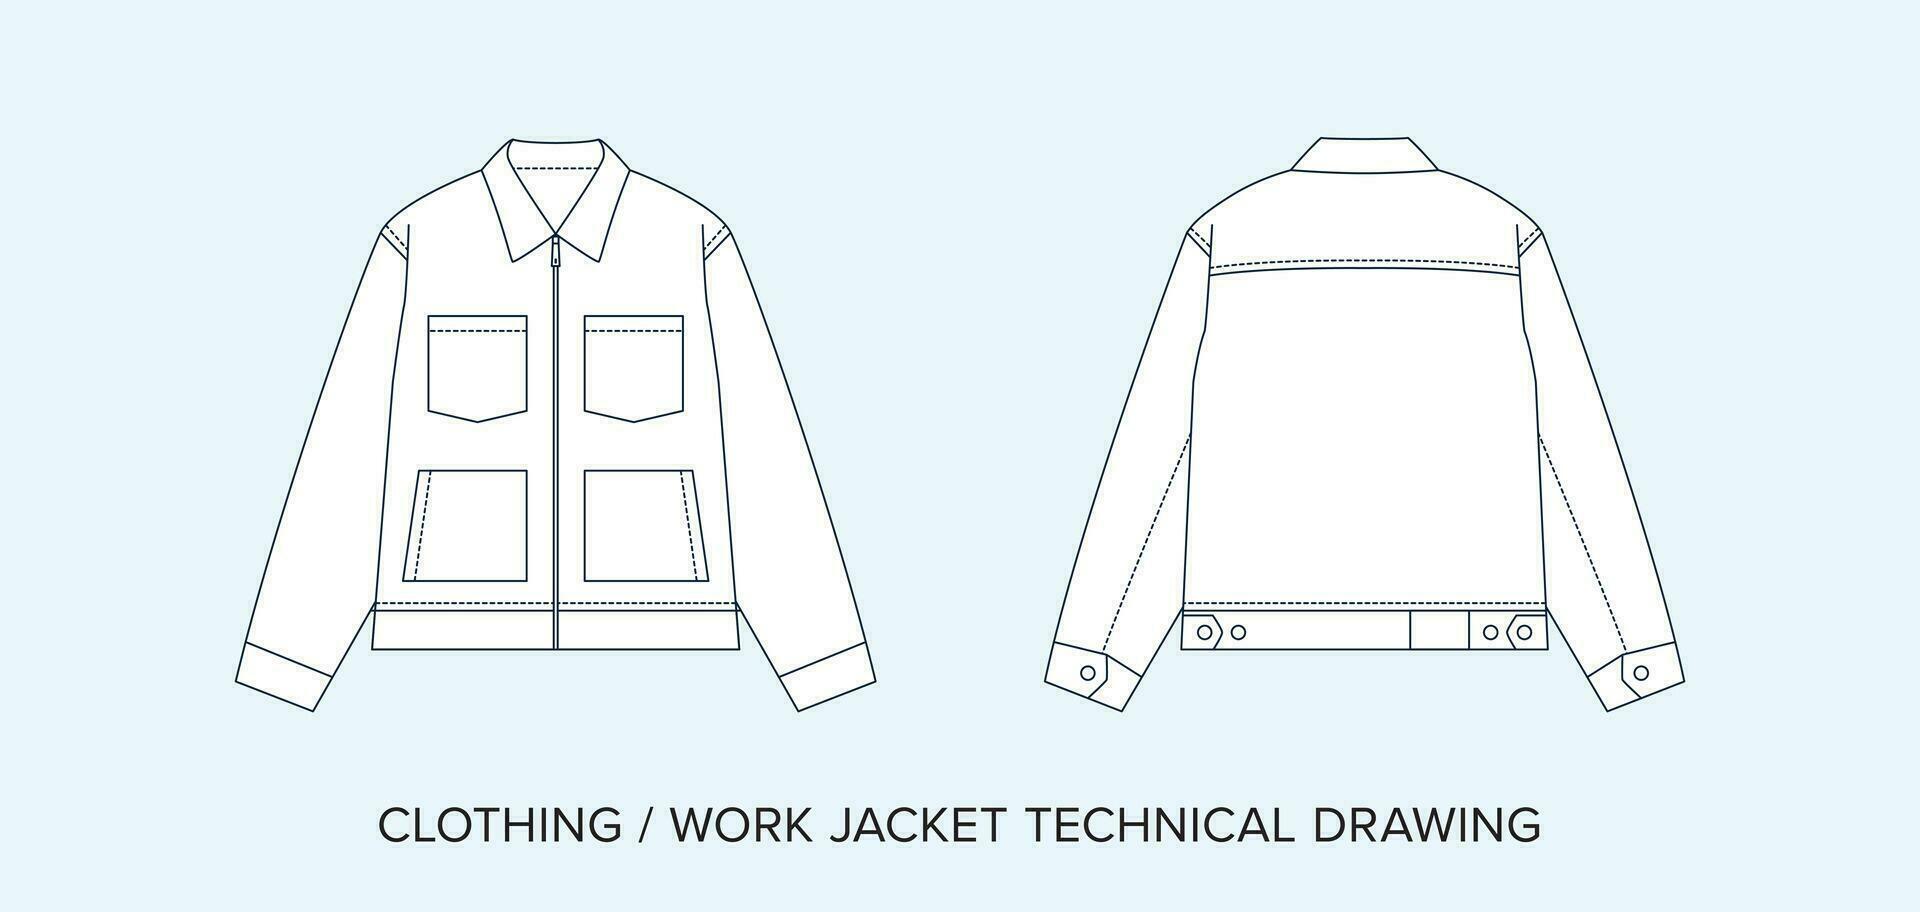 opera giacca con tasche, tecnico disegno, abbigliamento planimetria per moda progettisti vettore